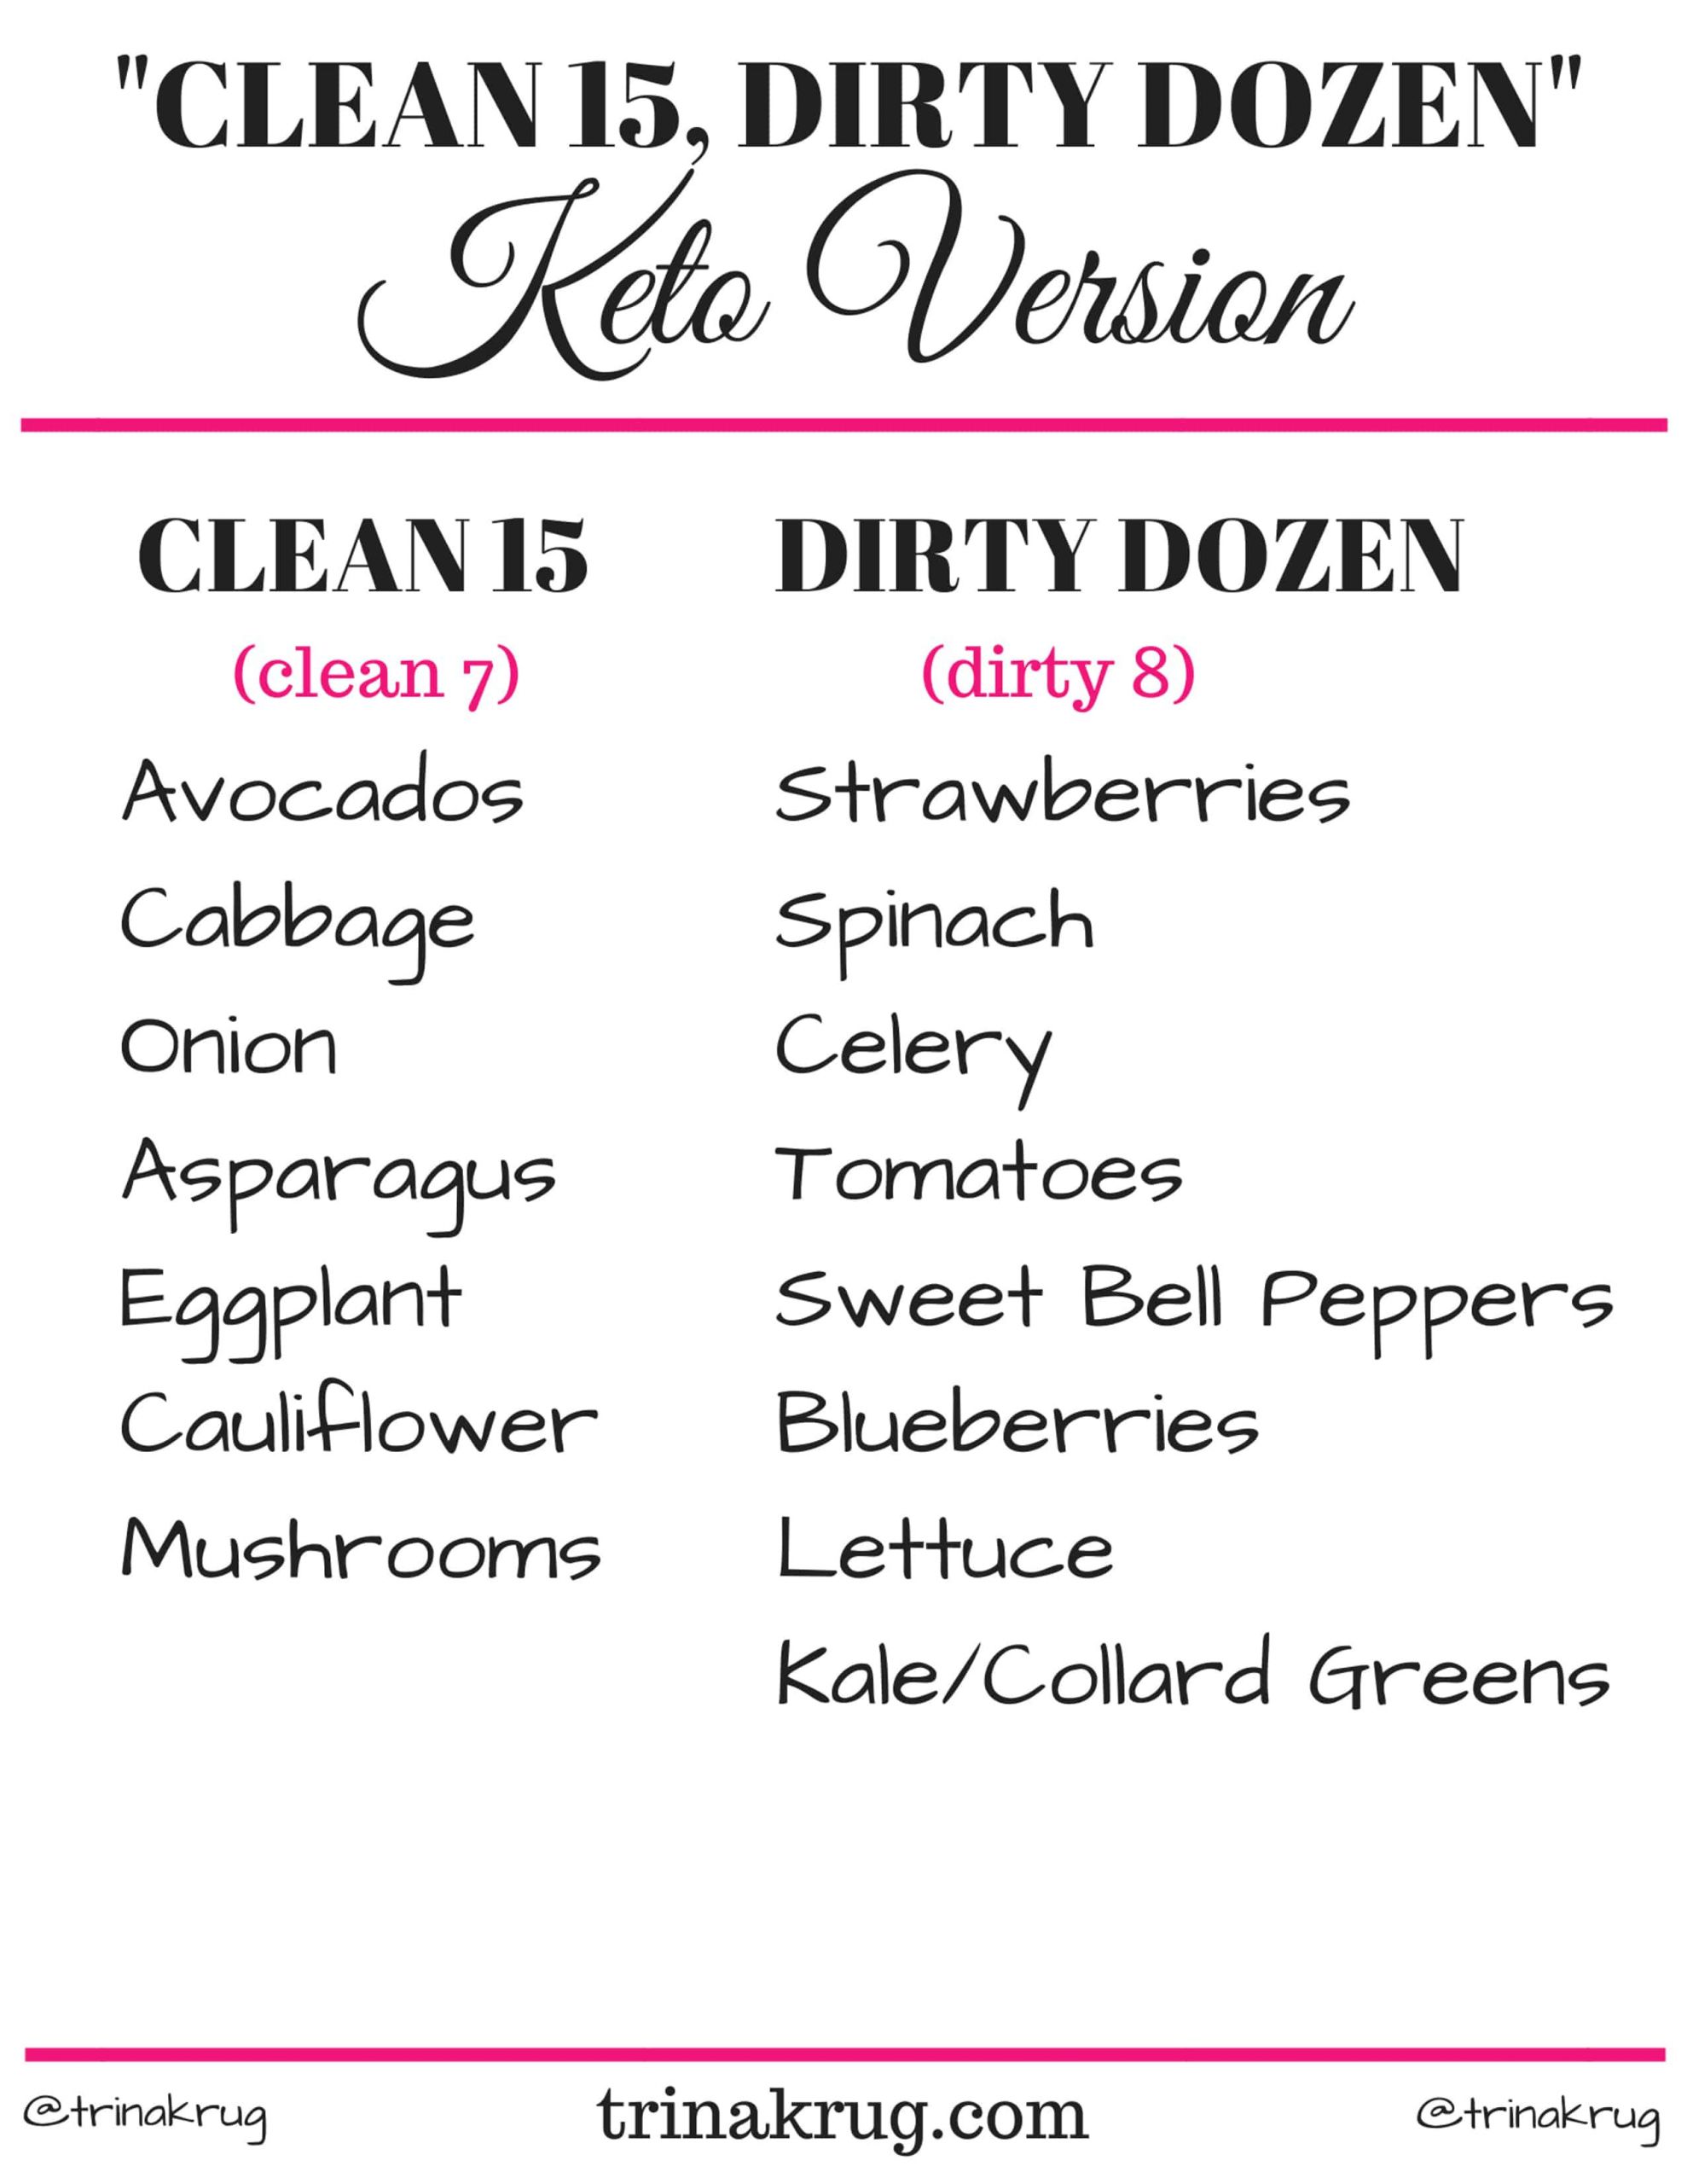 Clean Keto Vs Dirty Keto
 Keto Clean 15 and Dirty Dozen